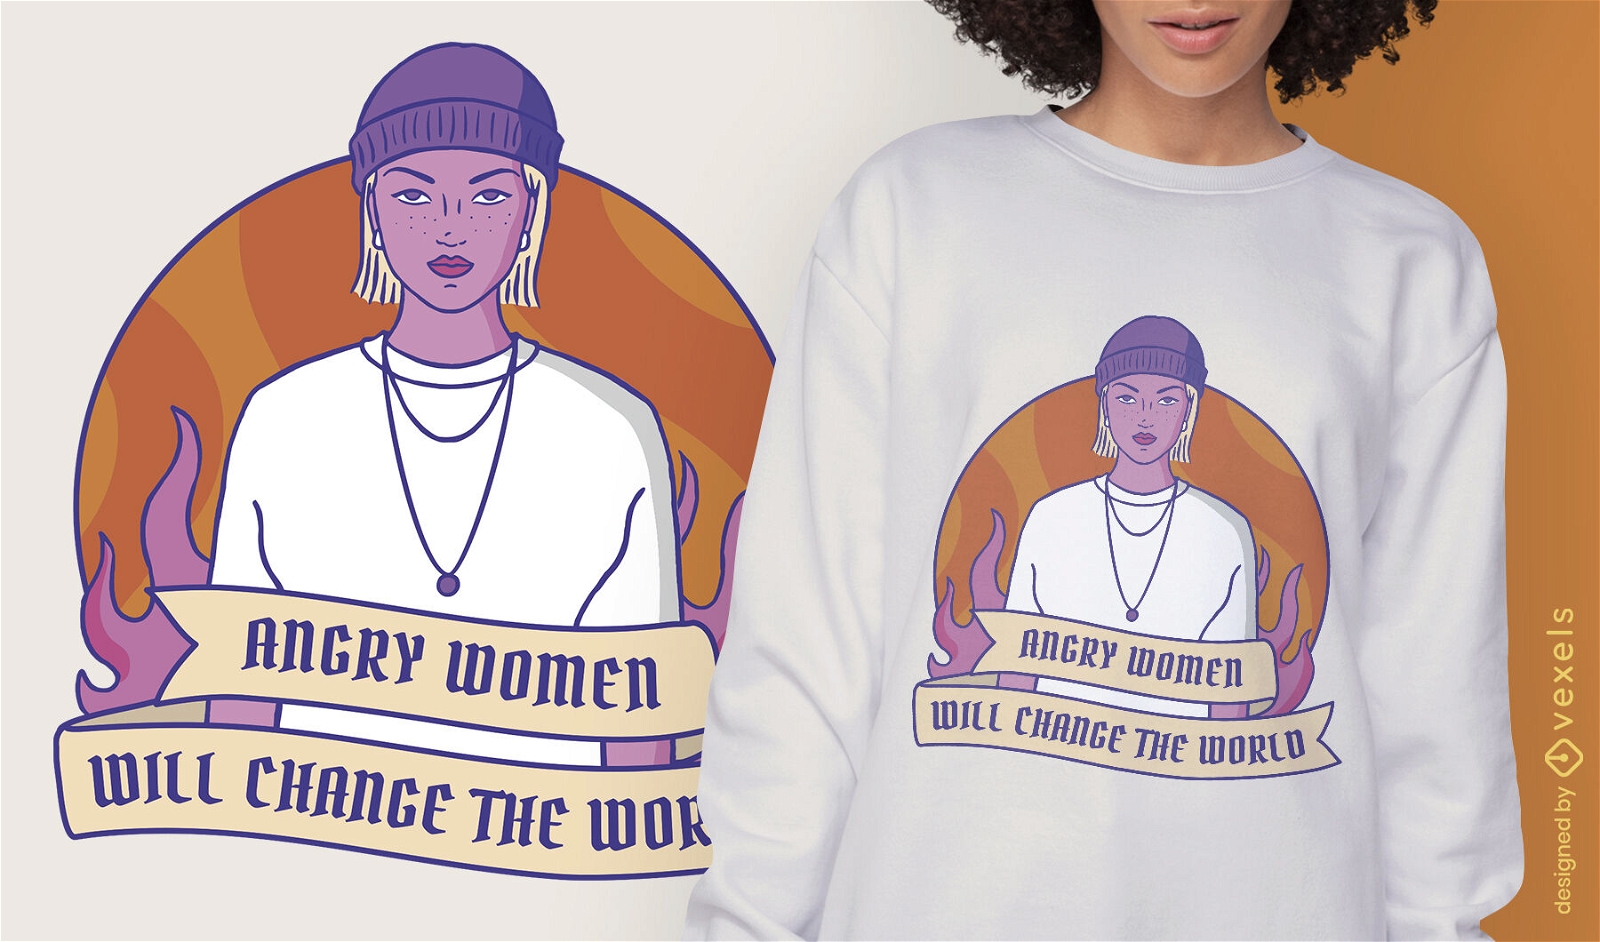 Dise?o de camiseta de mujer fuerte feminista.